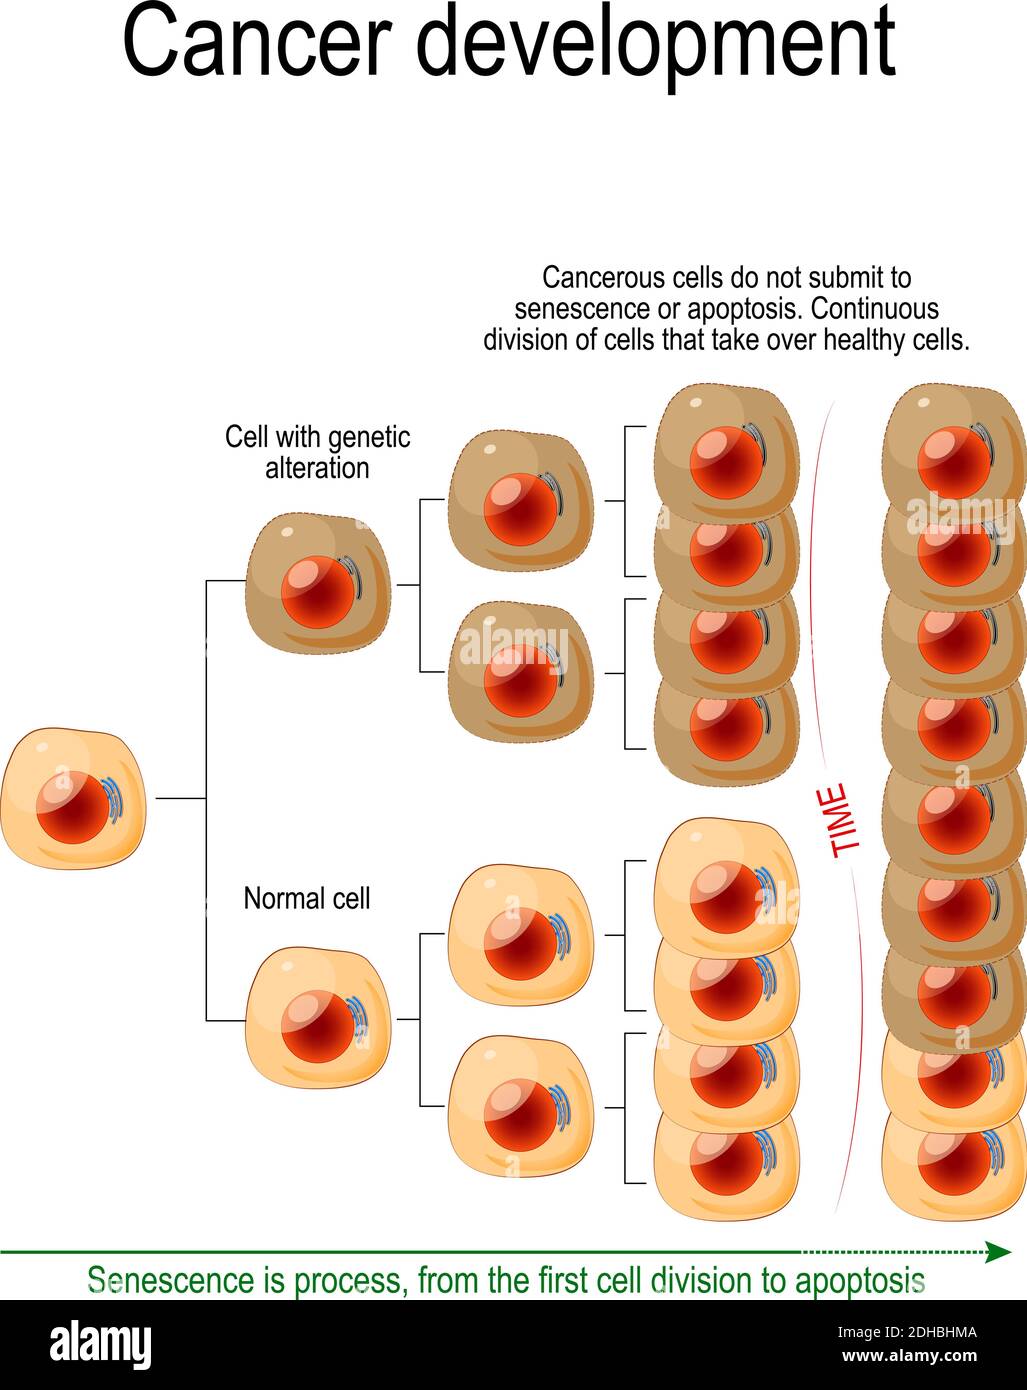 Développement du cancer. Les cellules cancéreuses ne se soumettent pas à la sénescence ou à l'apoptose. Сontinuous division des cellules qui prennent le contrôle des cellules saines. Vecteur Illustration de Vecteur